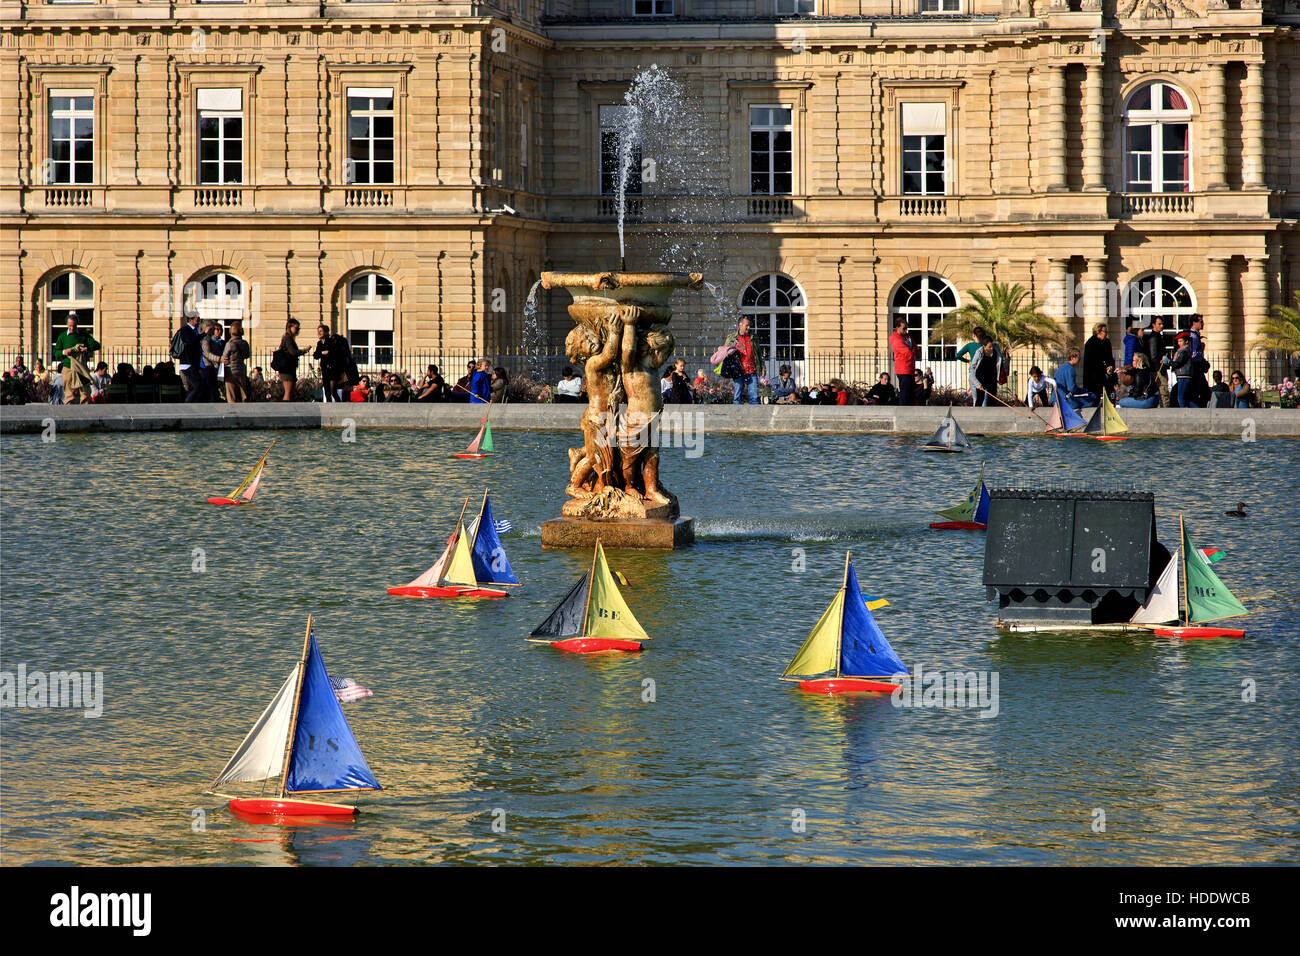 Barcos de madera retro - Juguetes en la piscina en frente del Palacio de Luxemburgo (Palacio) en el Jardín de Luxemburgo (Jardin), París. Foto de stock